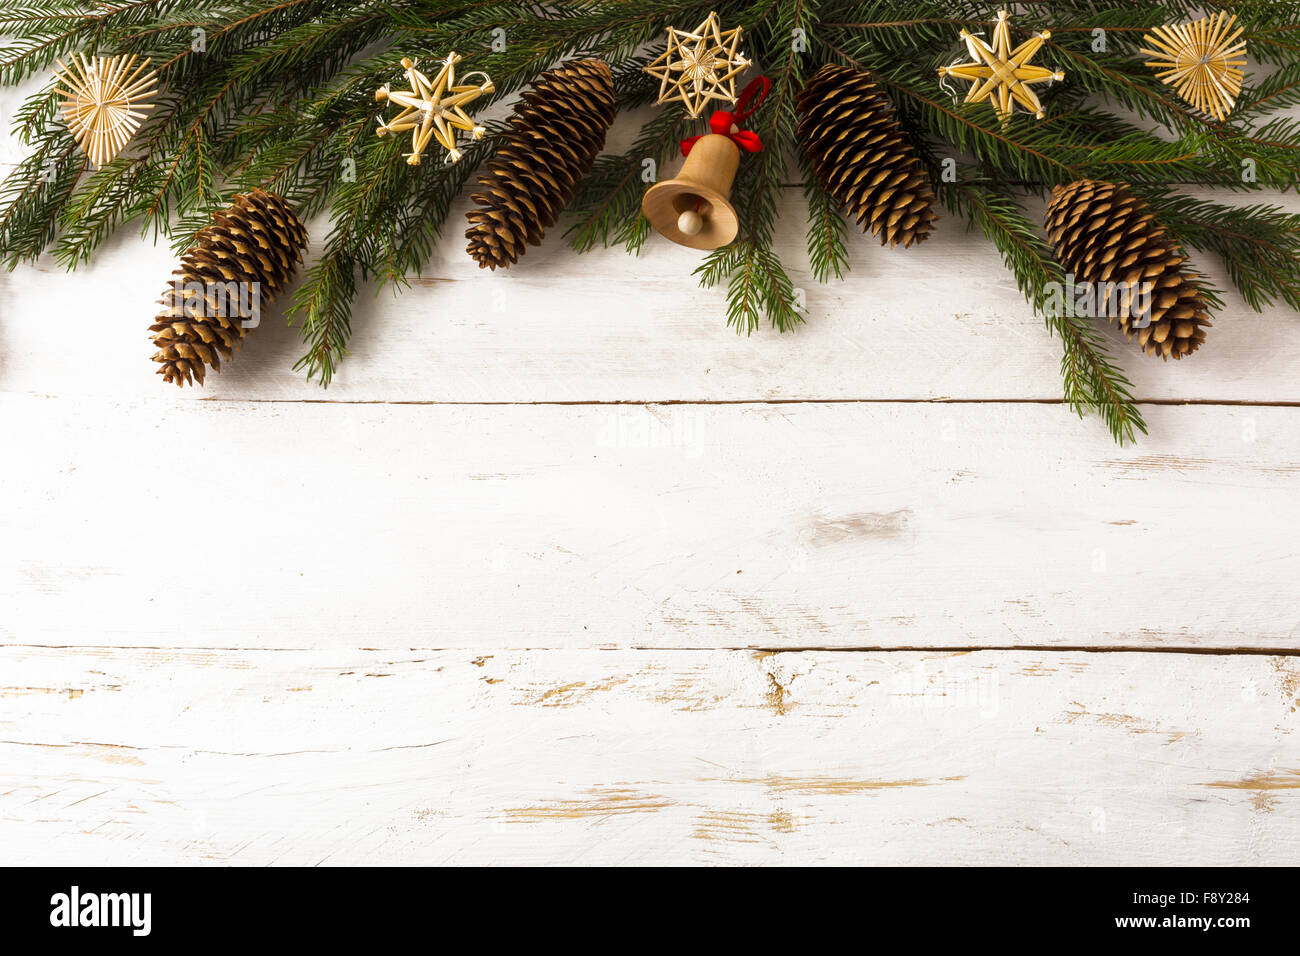 Hintergrund Dekoration Tanne Äste, Stroh Weihnachtsschmuck, hölzerne Jingle Bell, Tannenzapfen auf Whiteboards, Tiefenschärfe, c Stockfoto